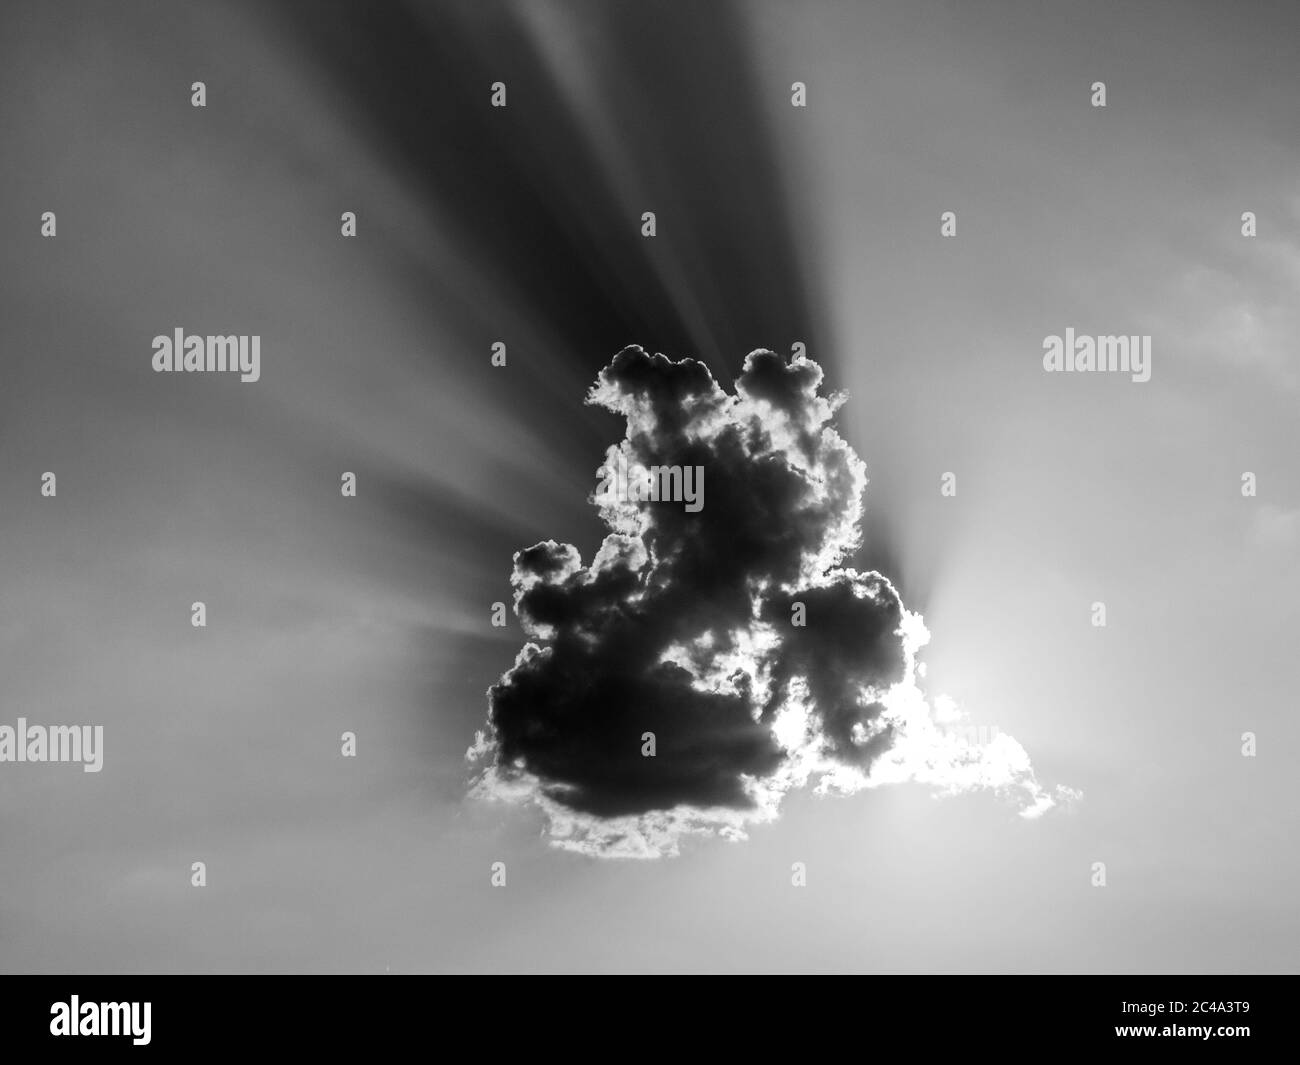 Il sole si nuvola dal sole serale dietro una nuvola piccola. Immagine in bianco e nero. Foto Stock